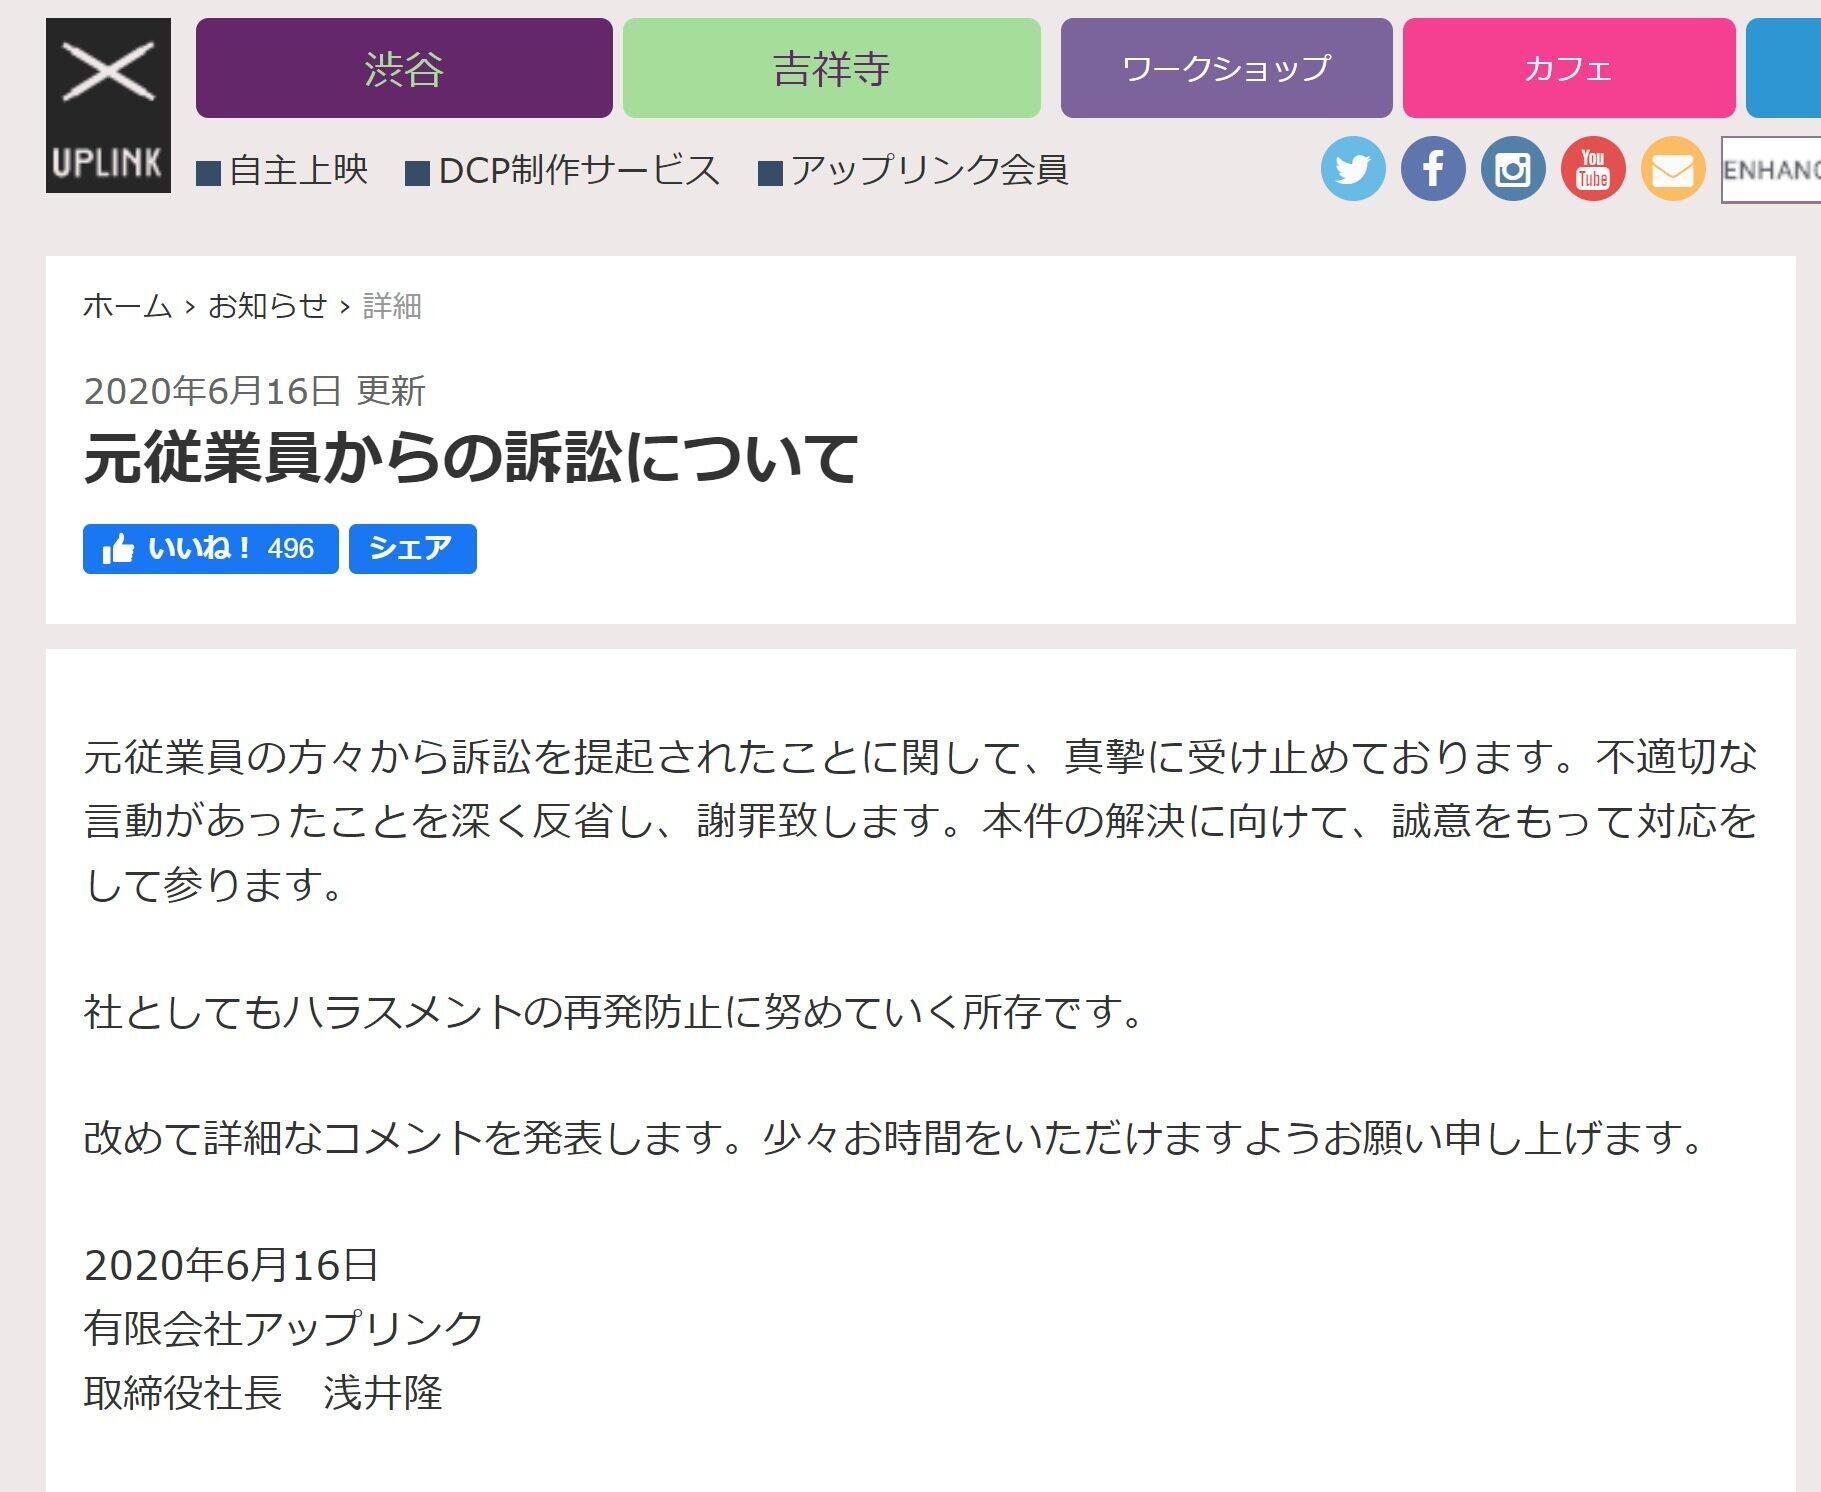 アップリンクは、浅井隆社長名で謝罪文を掲載